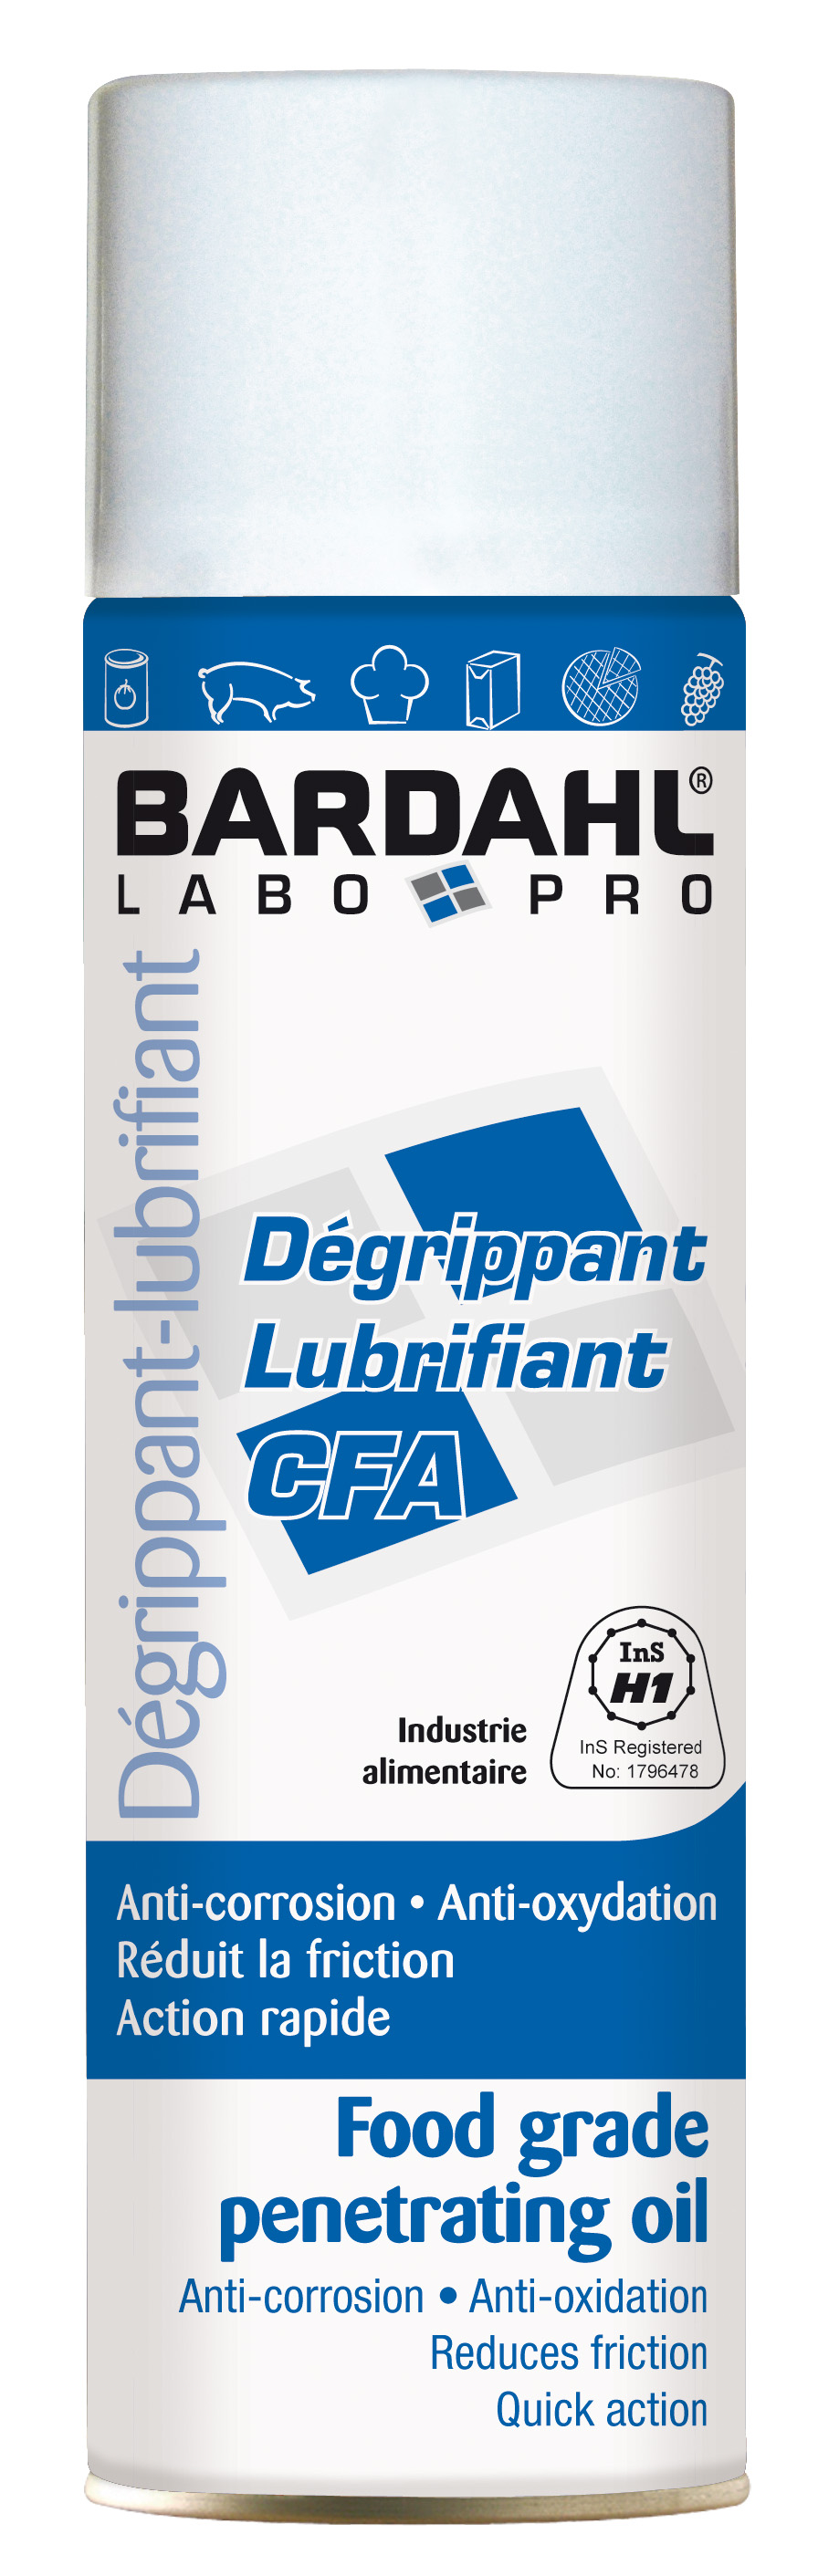 Dégrippant lubrifiant pour l'industrie alimentaire degrippant cfa_0